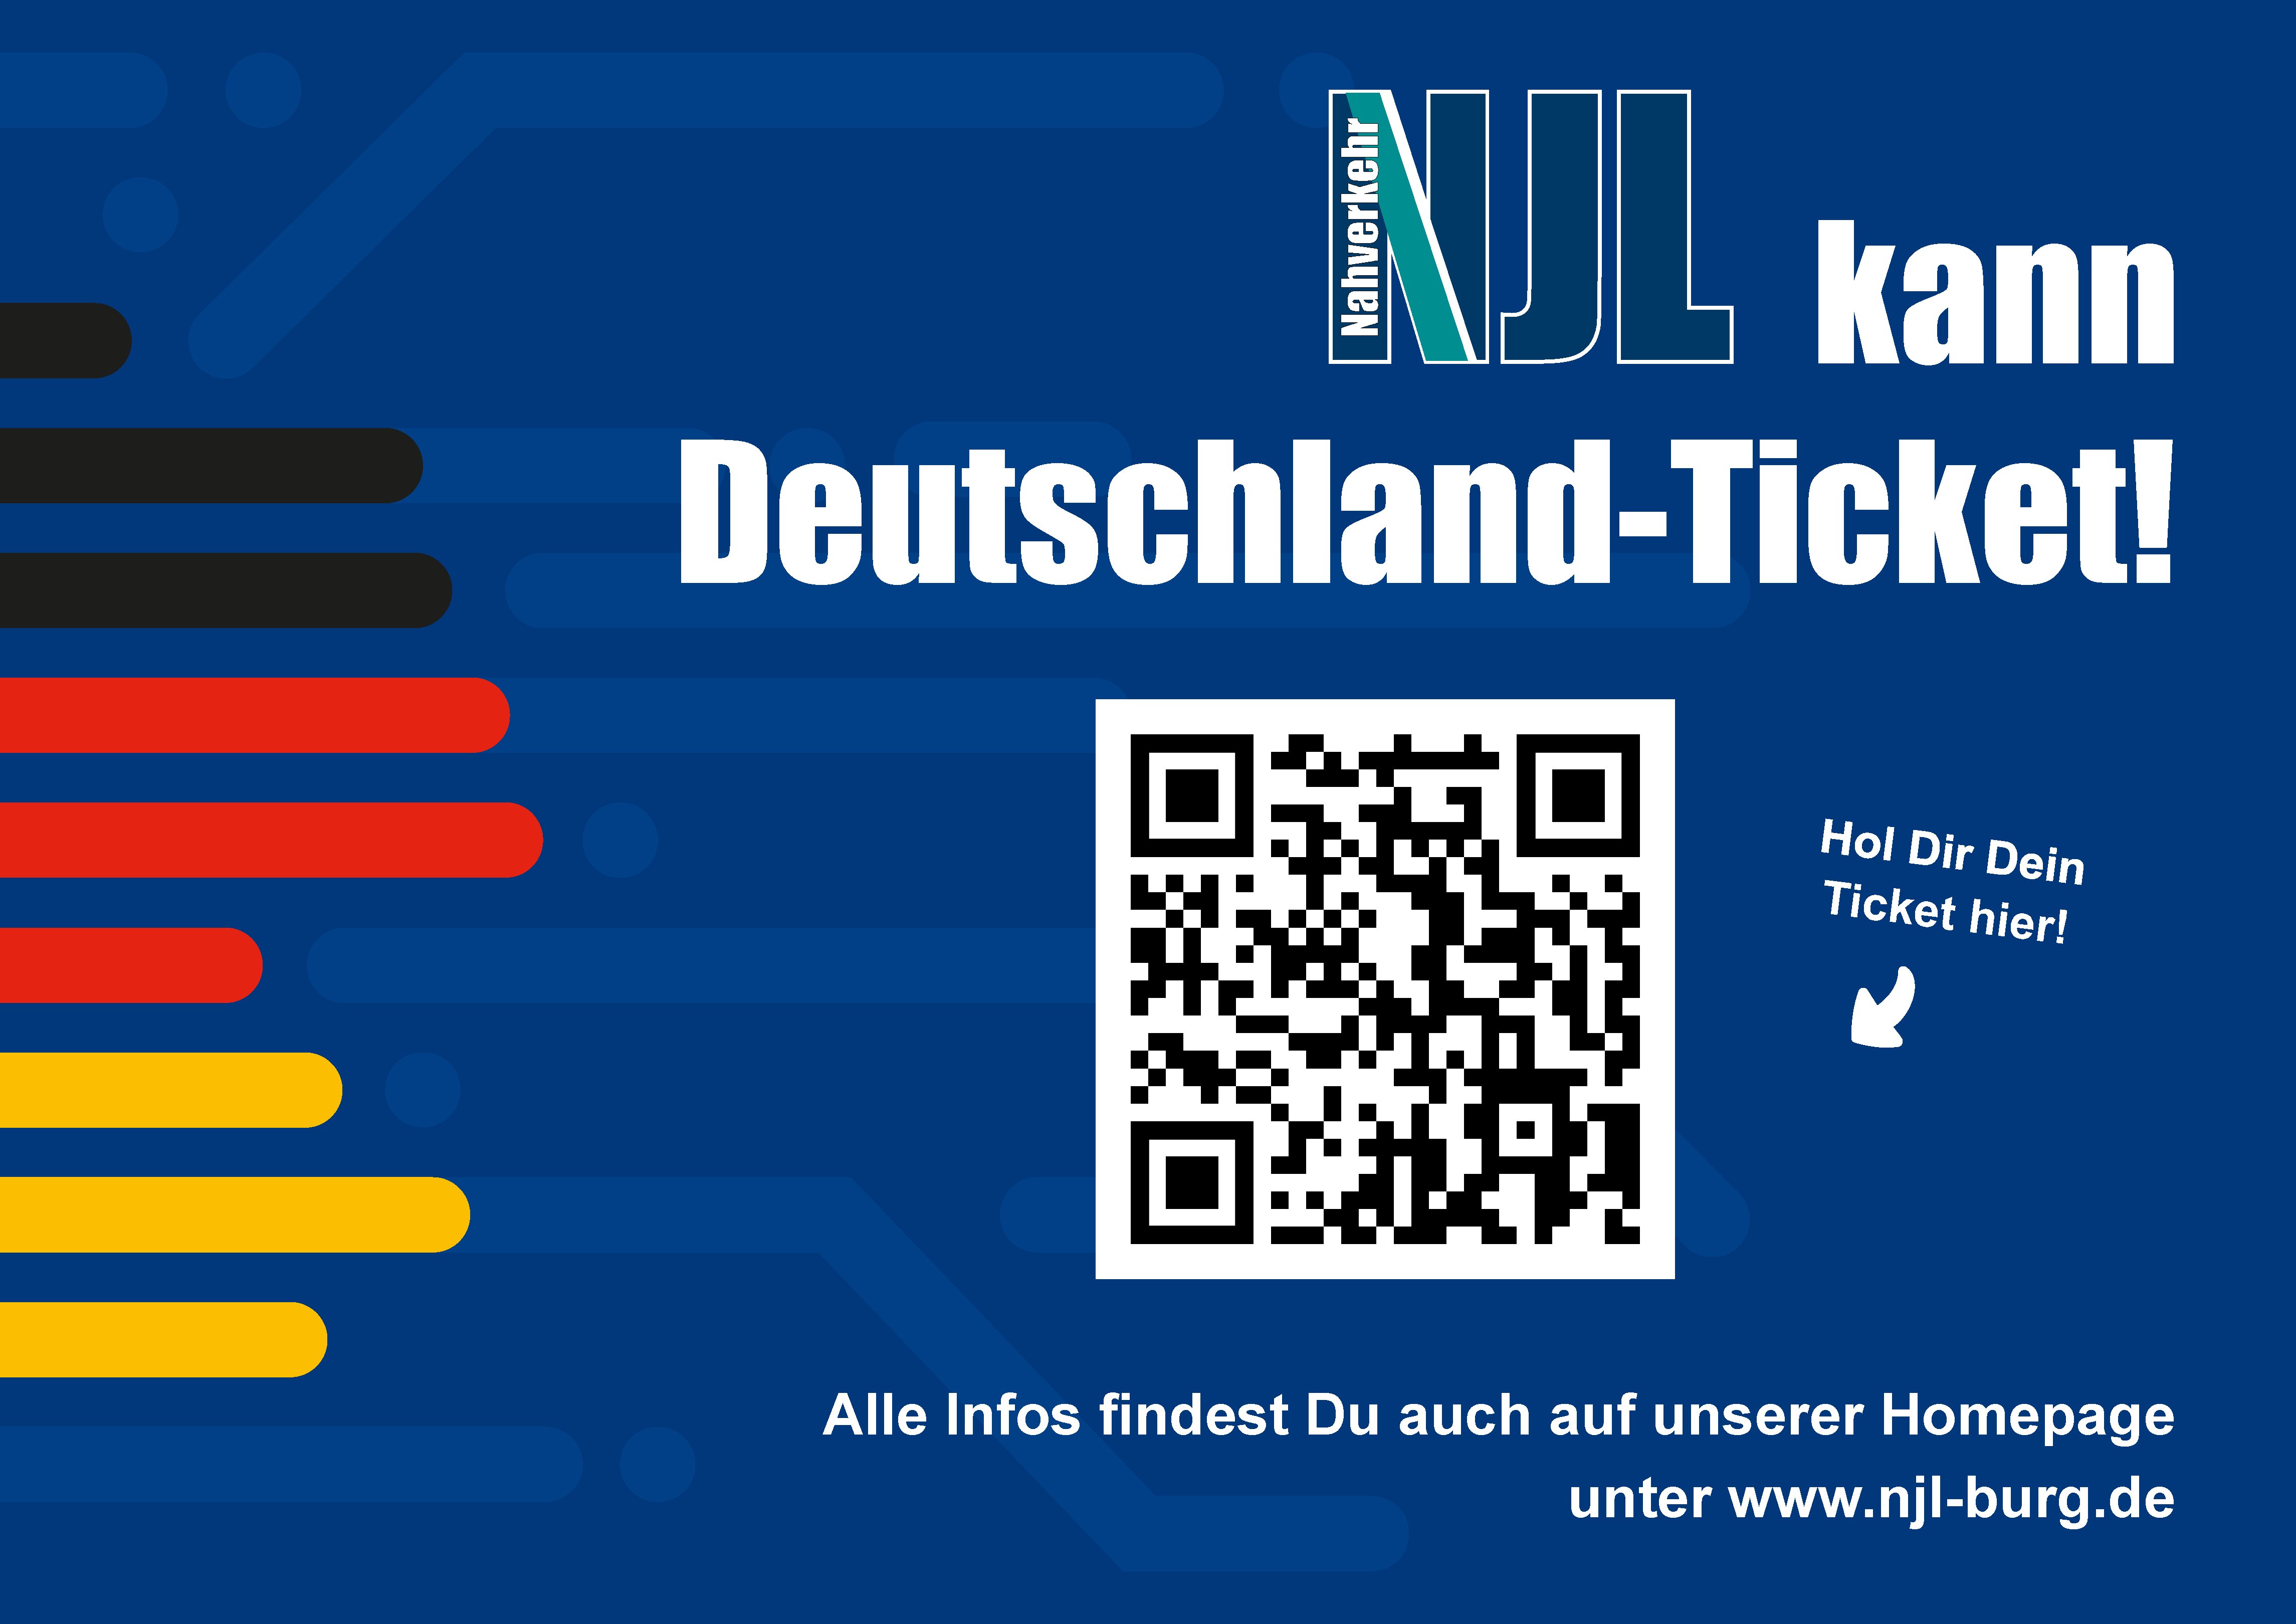 QR-code für das Deutschland-Ticket. 